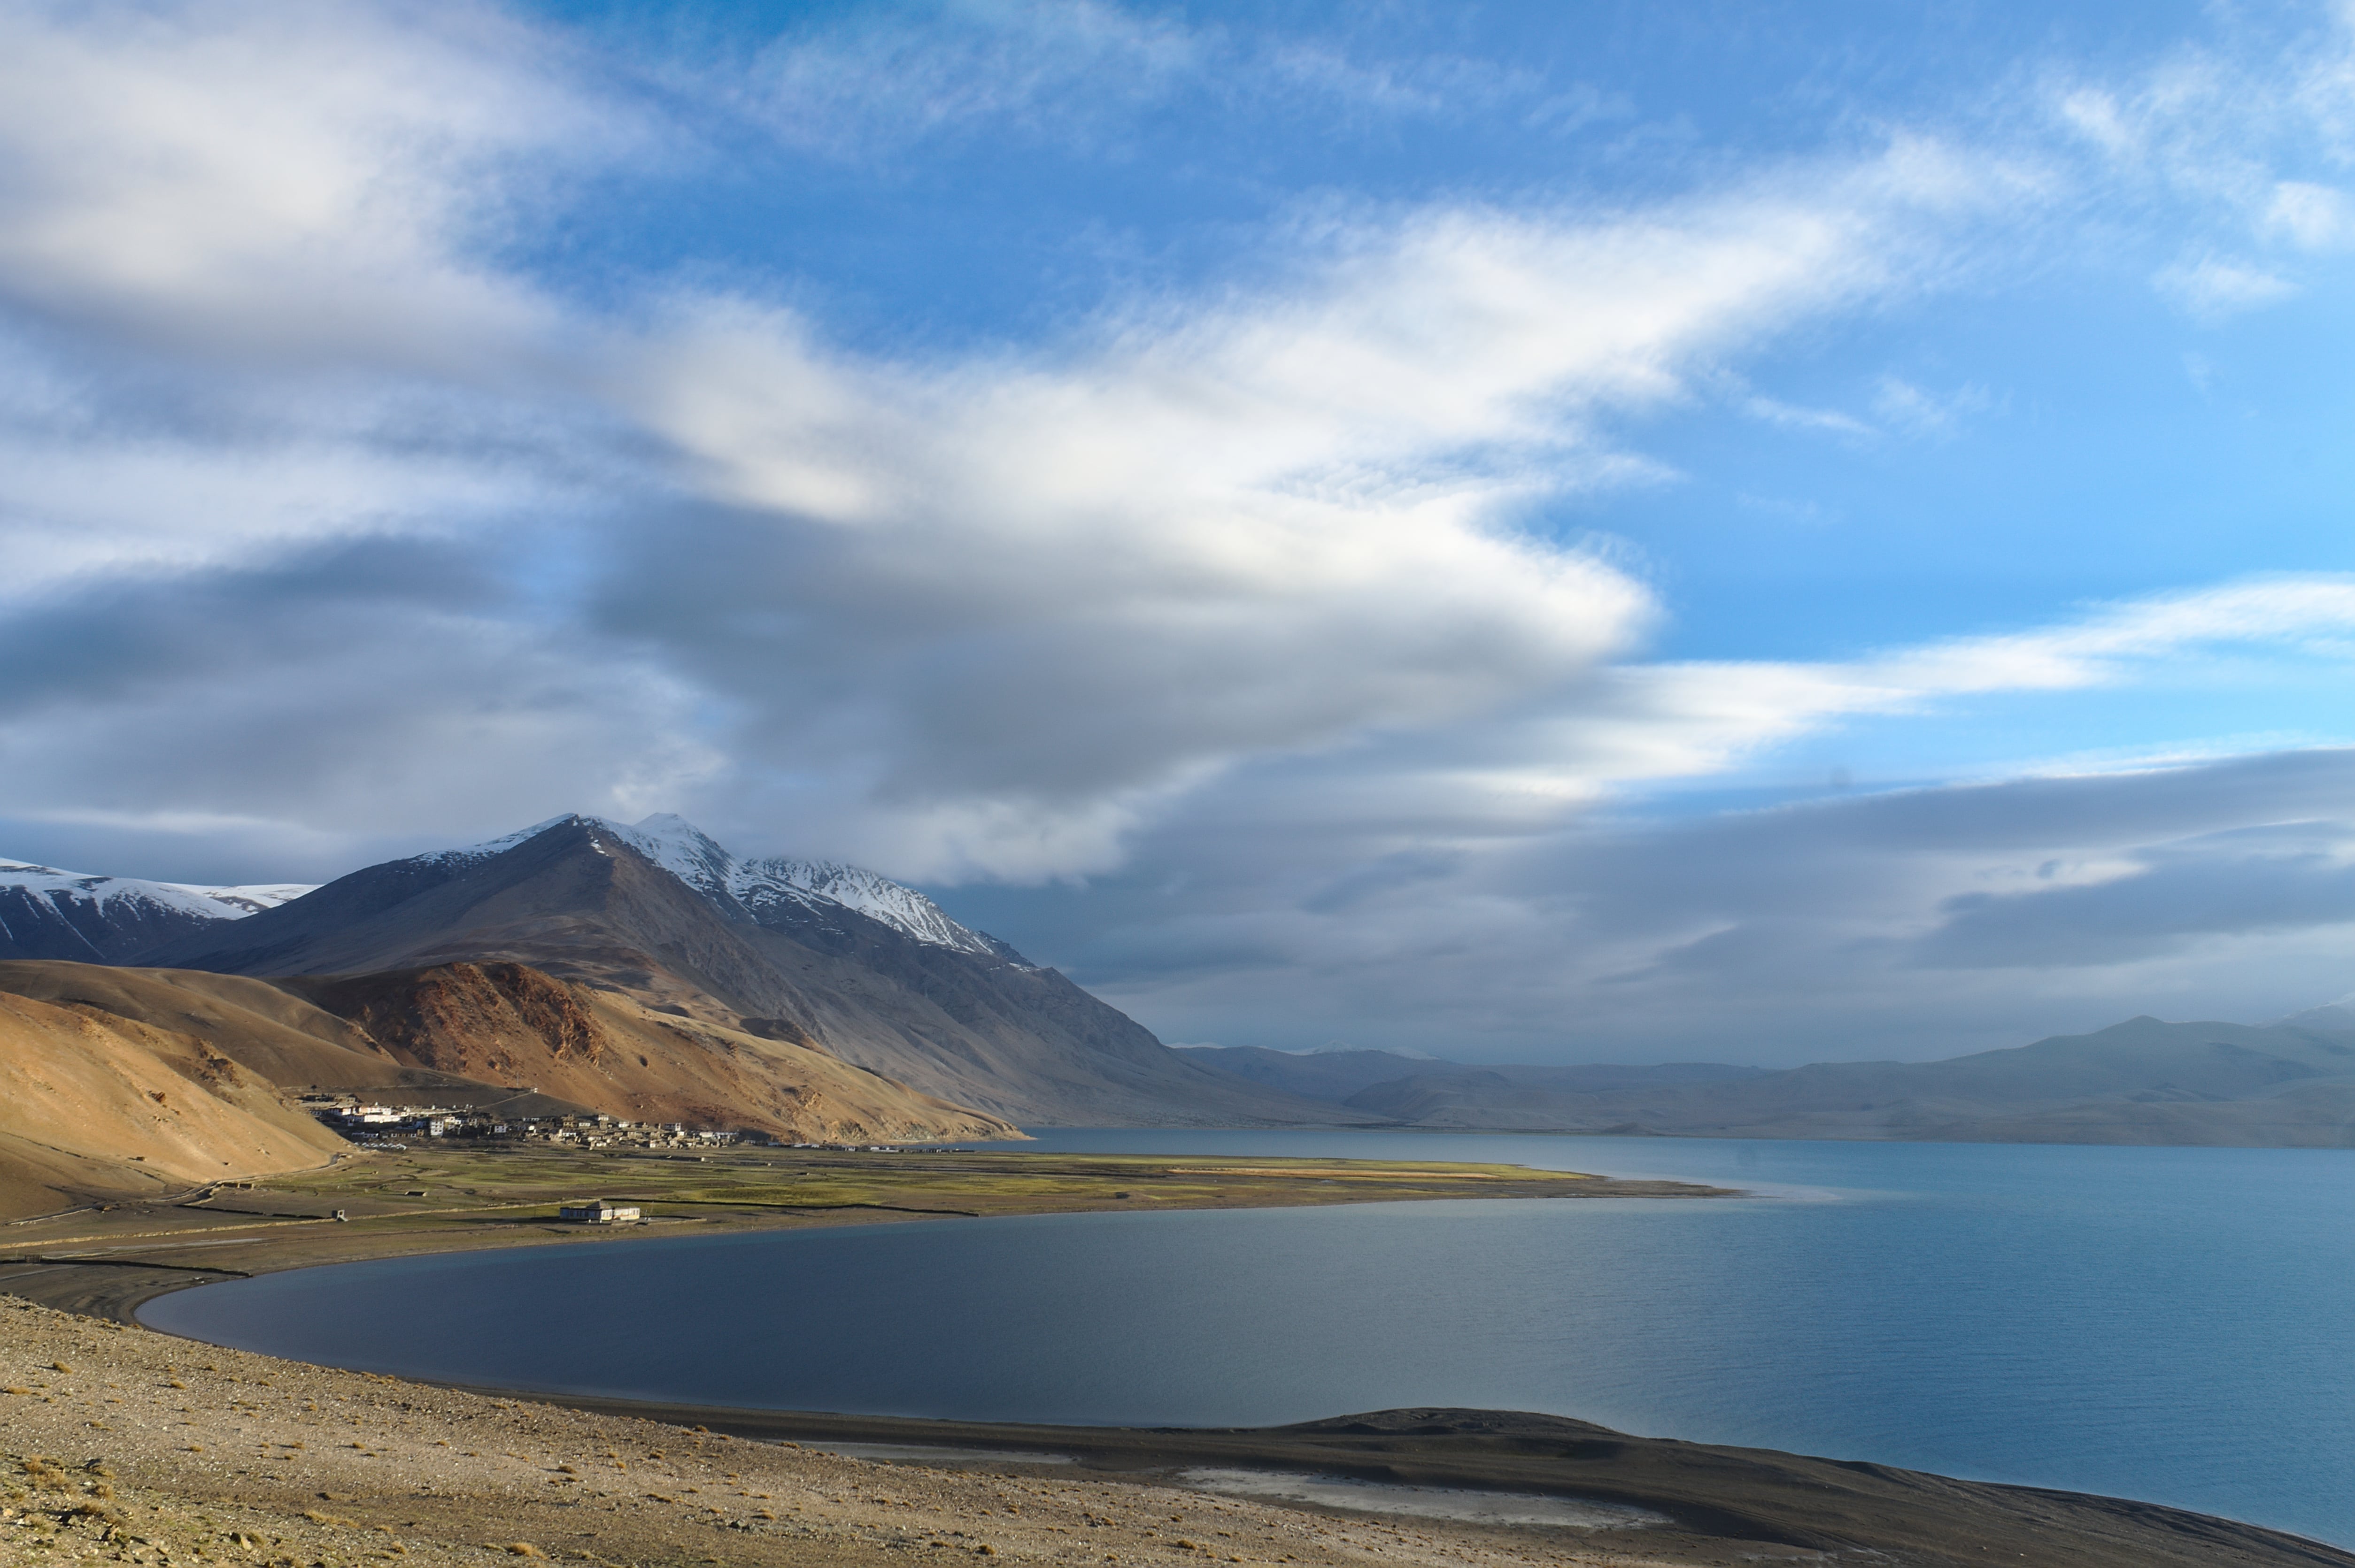 leh-ladakh-tso-moriri-lake-pangong-lake-images-pictures-wanderon